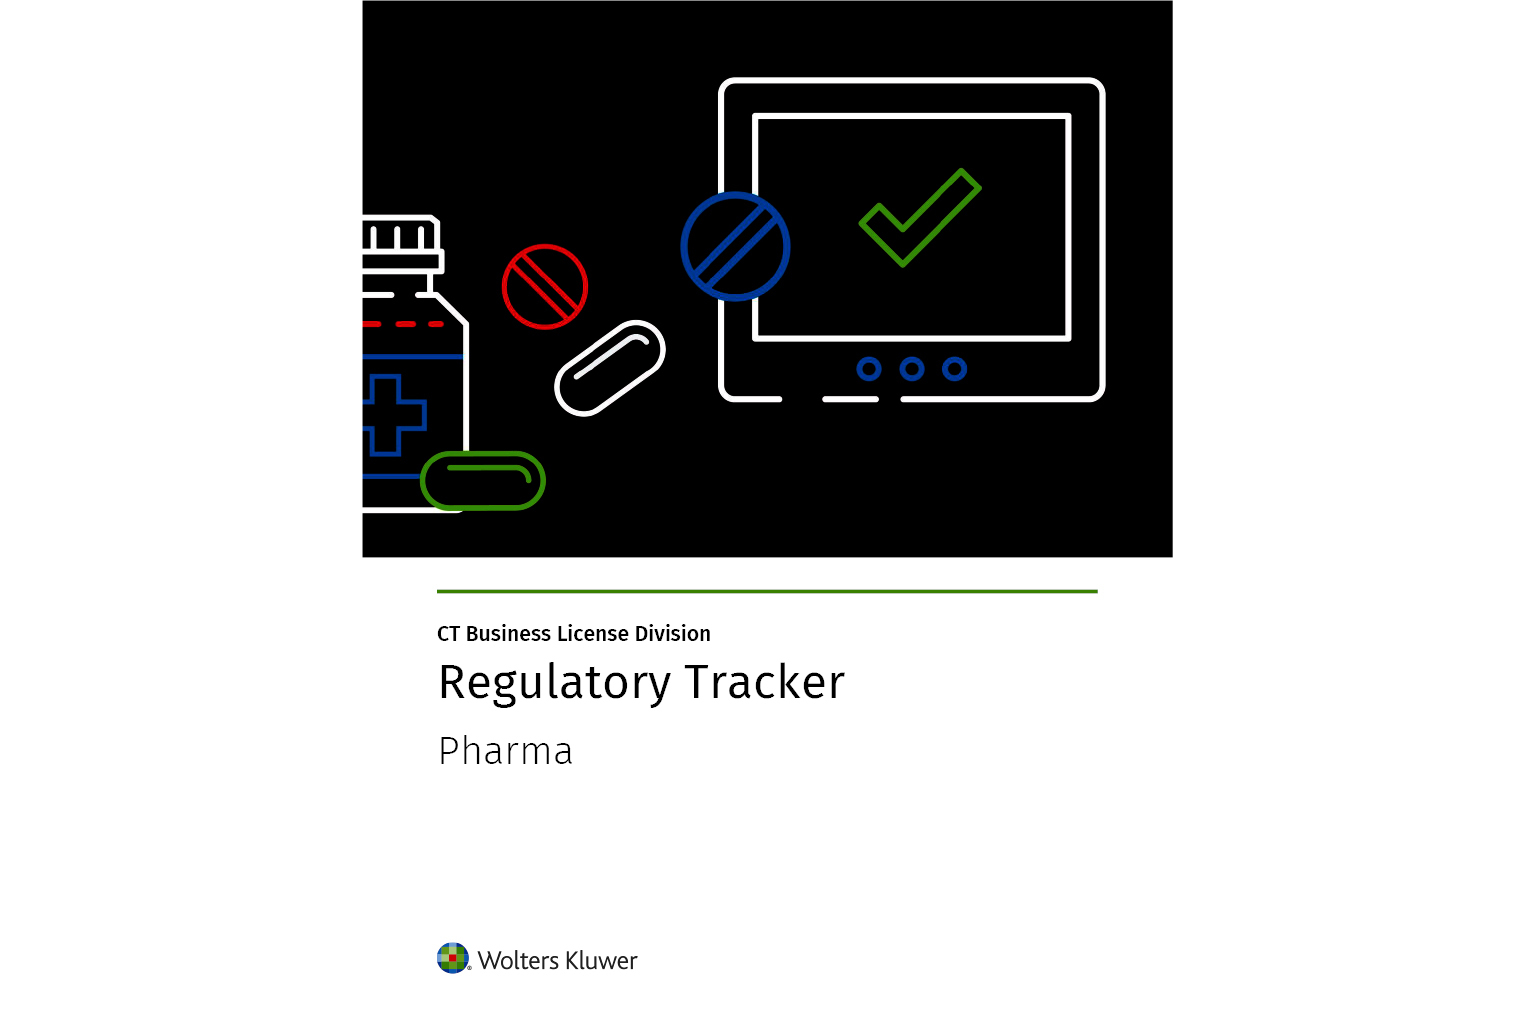 Pharma Regulatory Tracker from CT Corporation